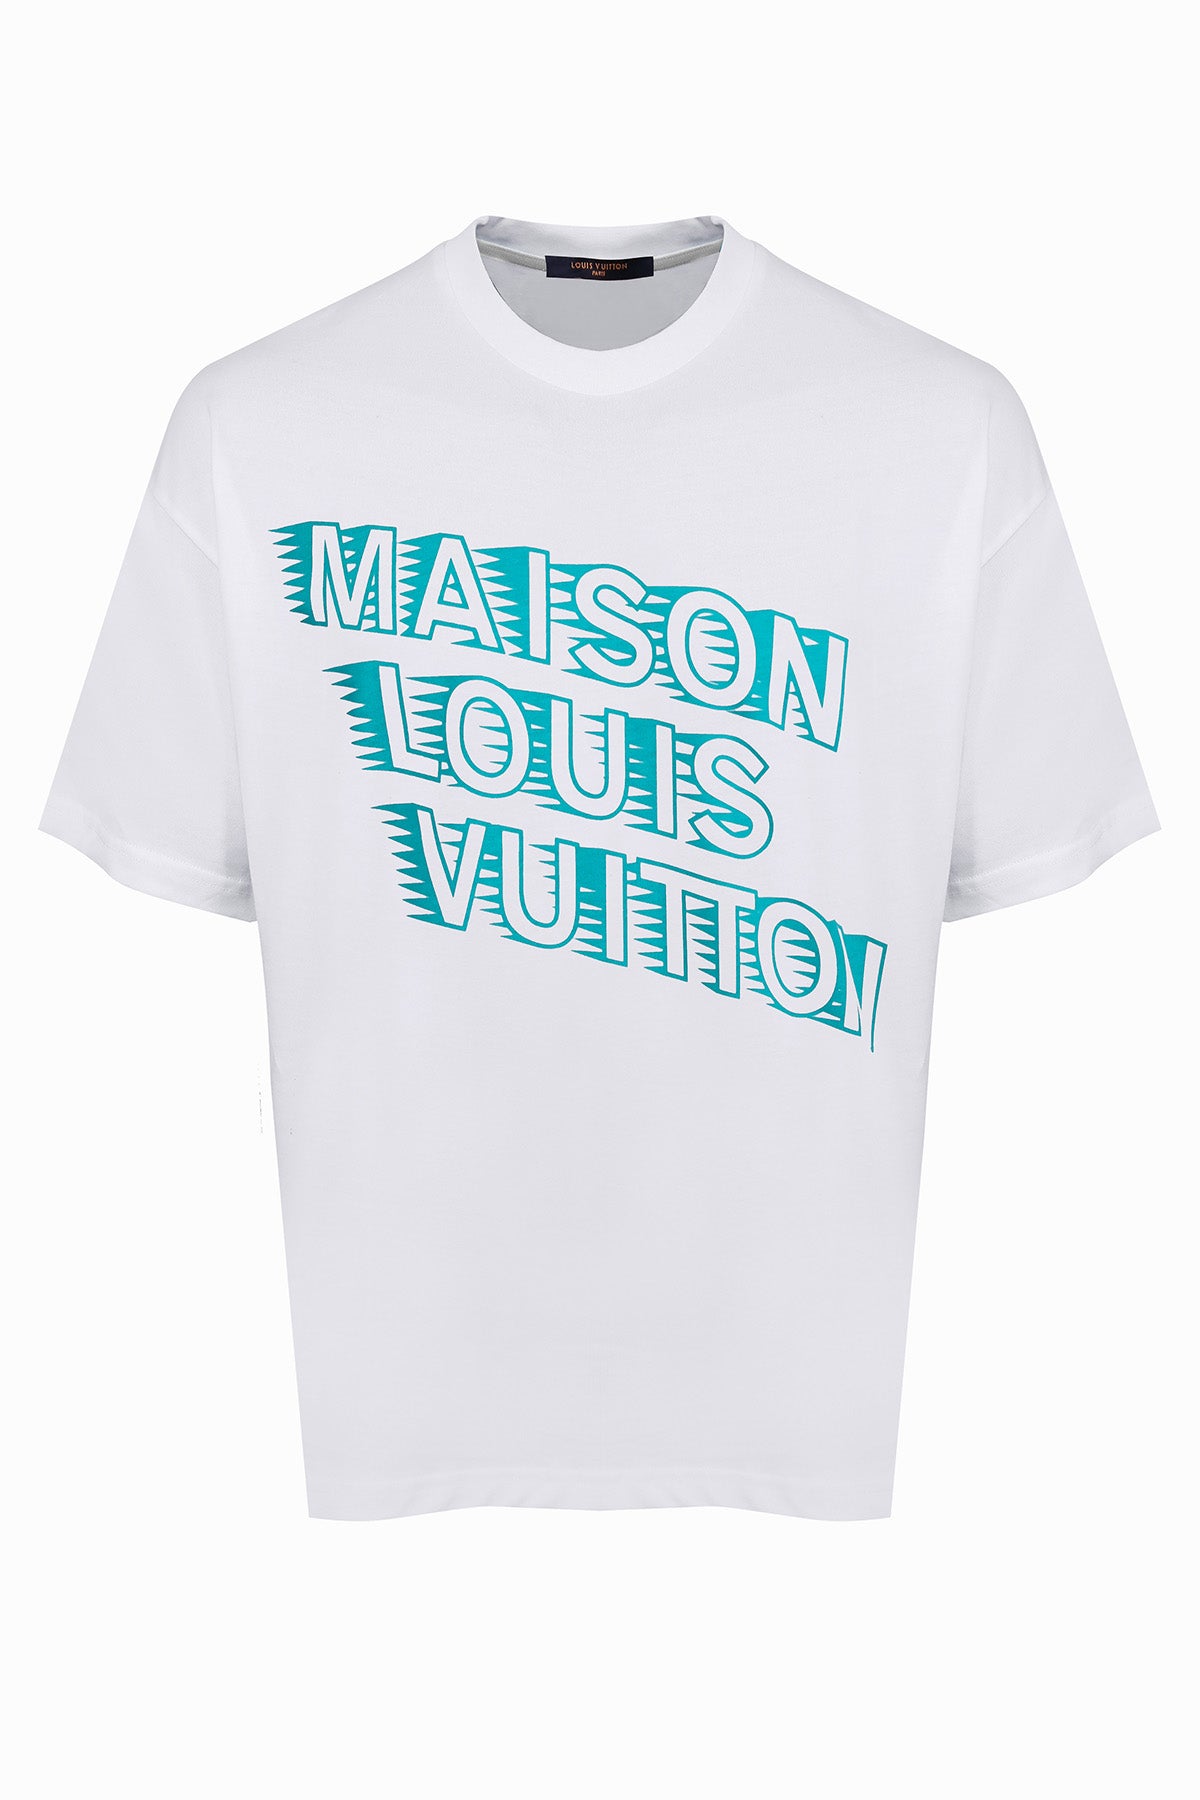 Louis Vuitton Maison LV Crewneck White